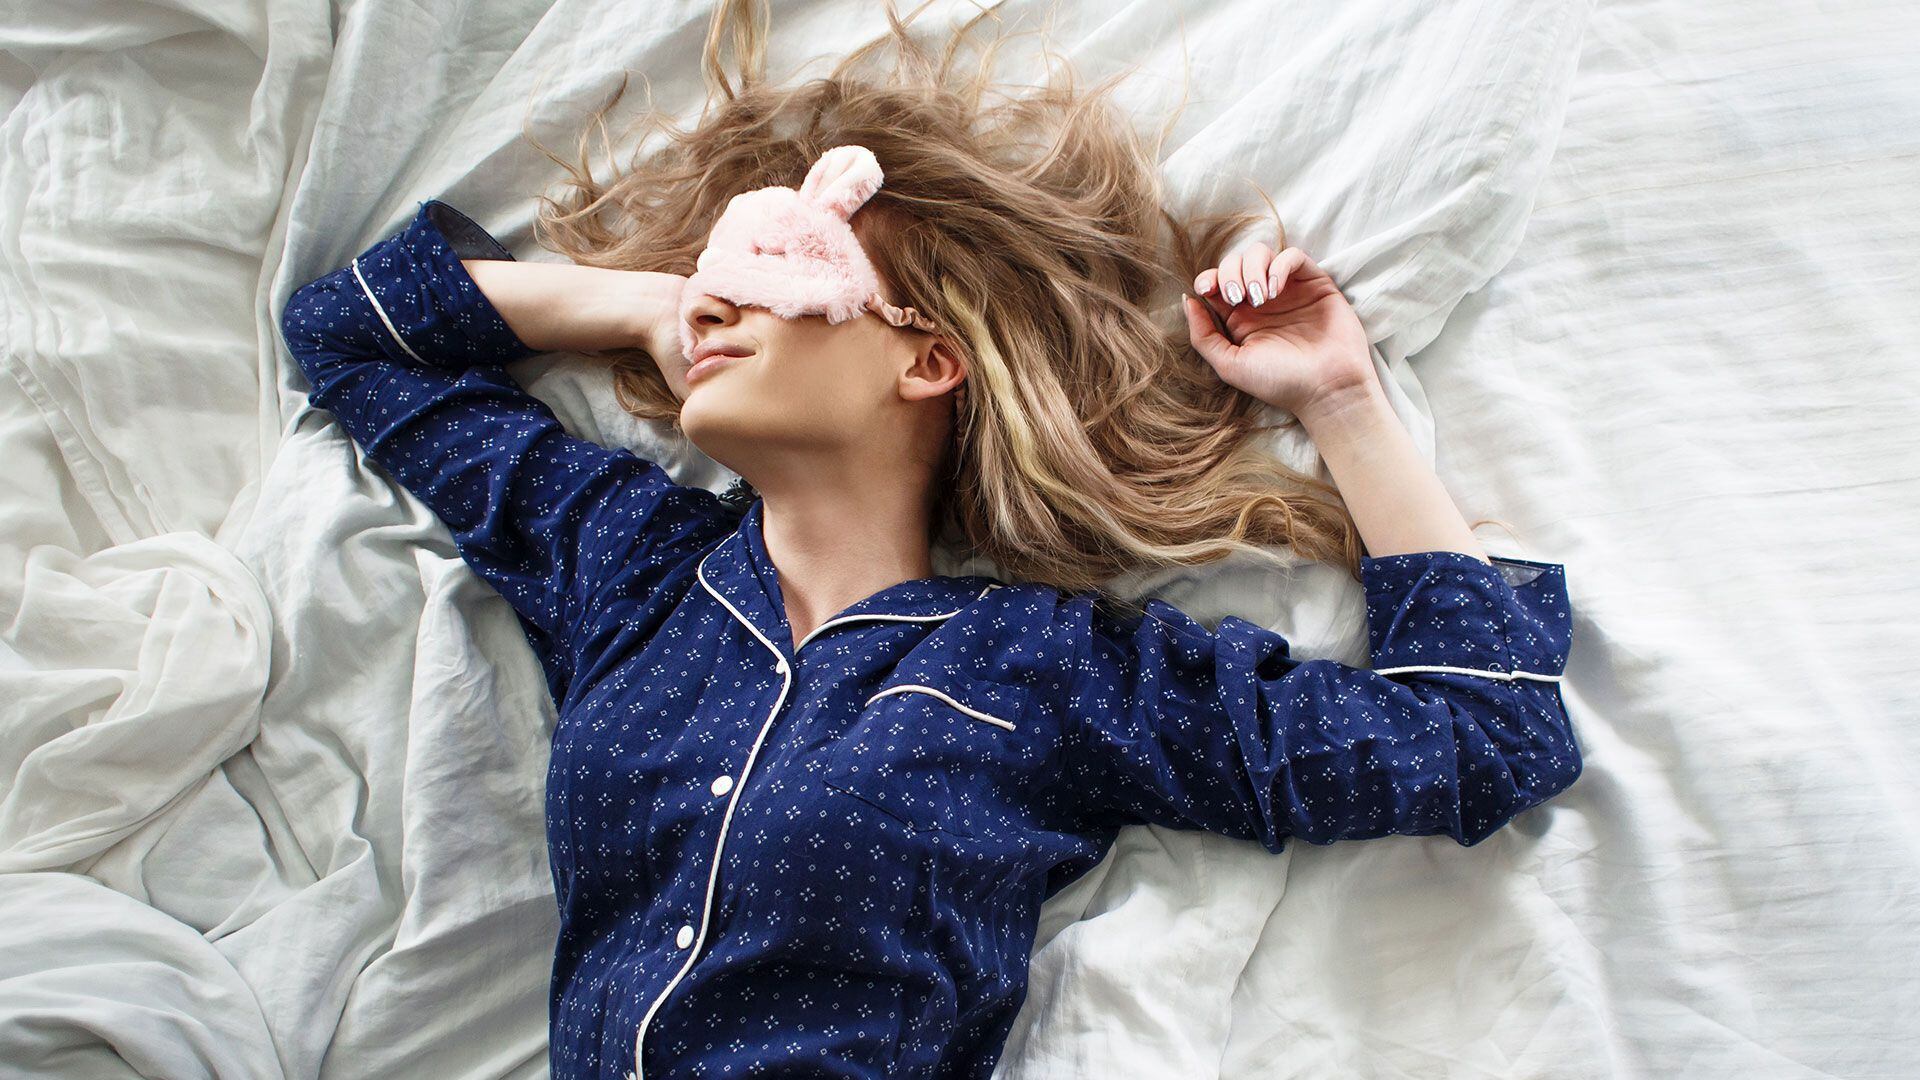 Dormir es una función necesaria de nuestro organismo que debemos cuidar